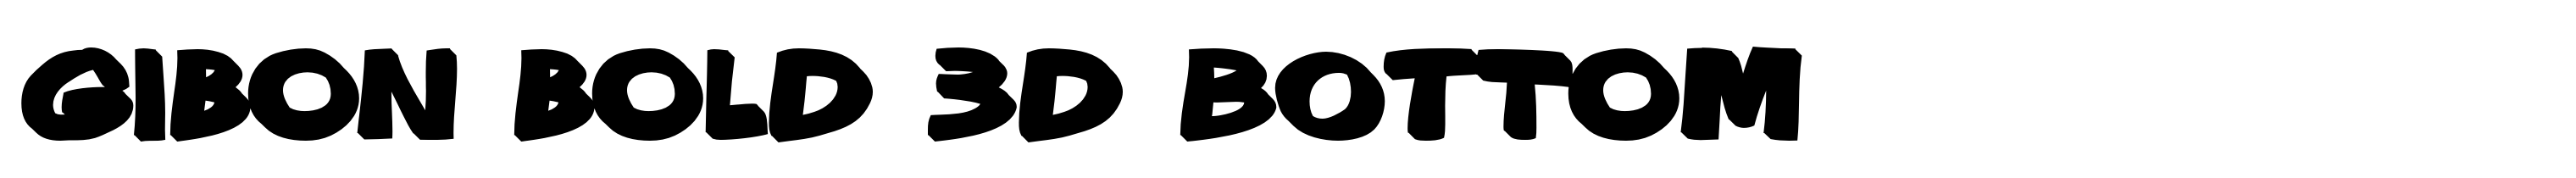 Gibon Bold 3D Bottom